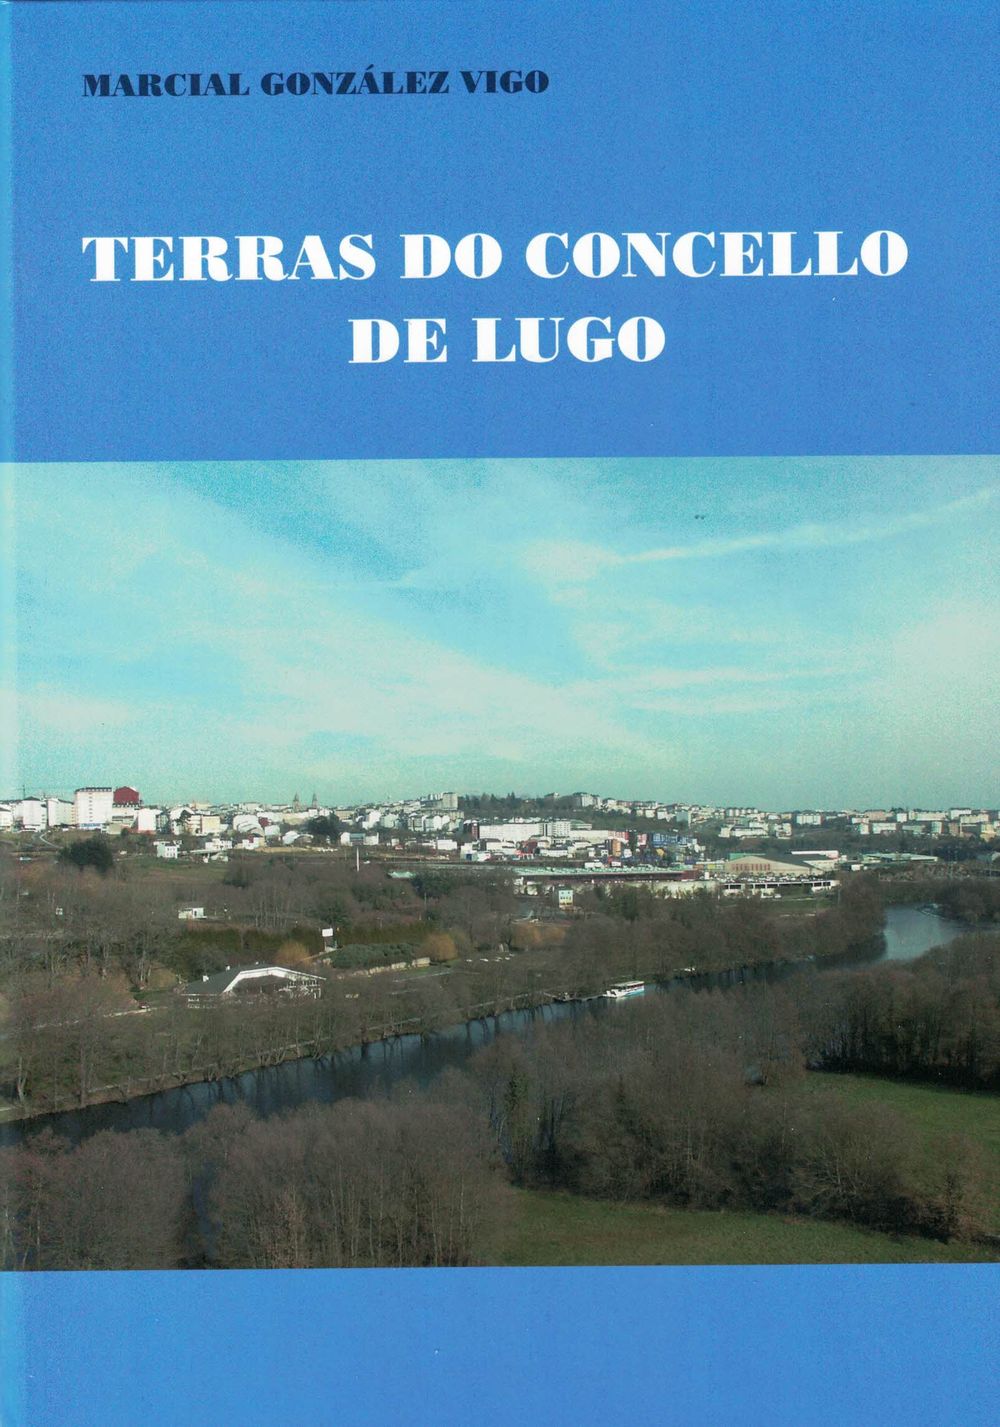 Terras do Concello de Lugo (Marcial González Vigo)